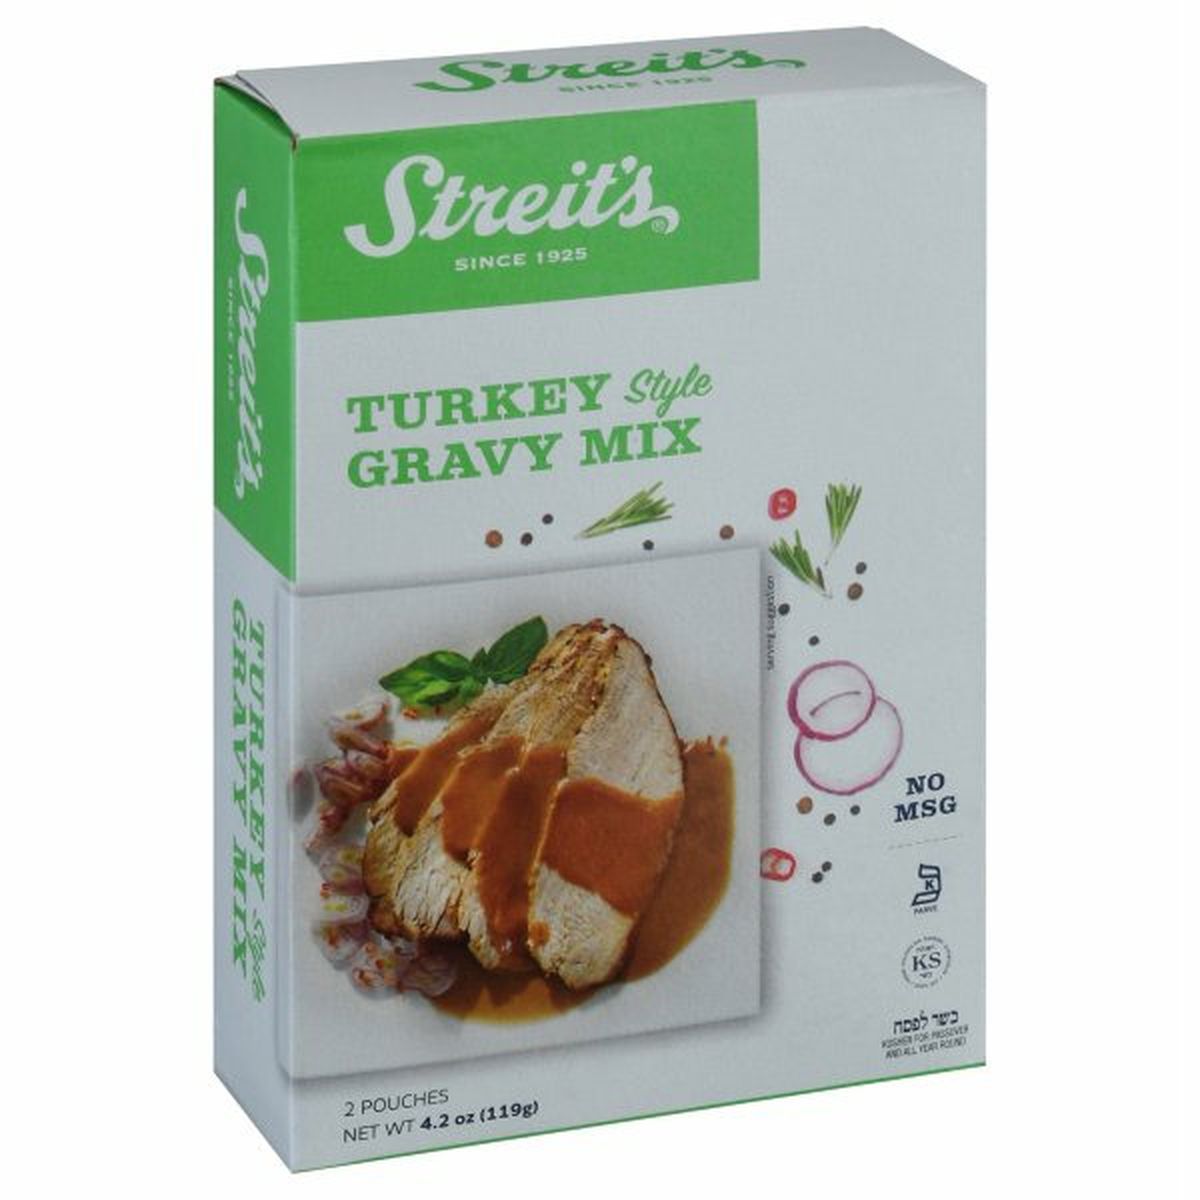 Calories in Streit's Gravy Mix, Turkey Style